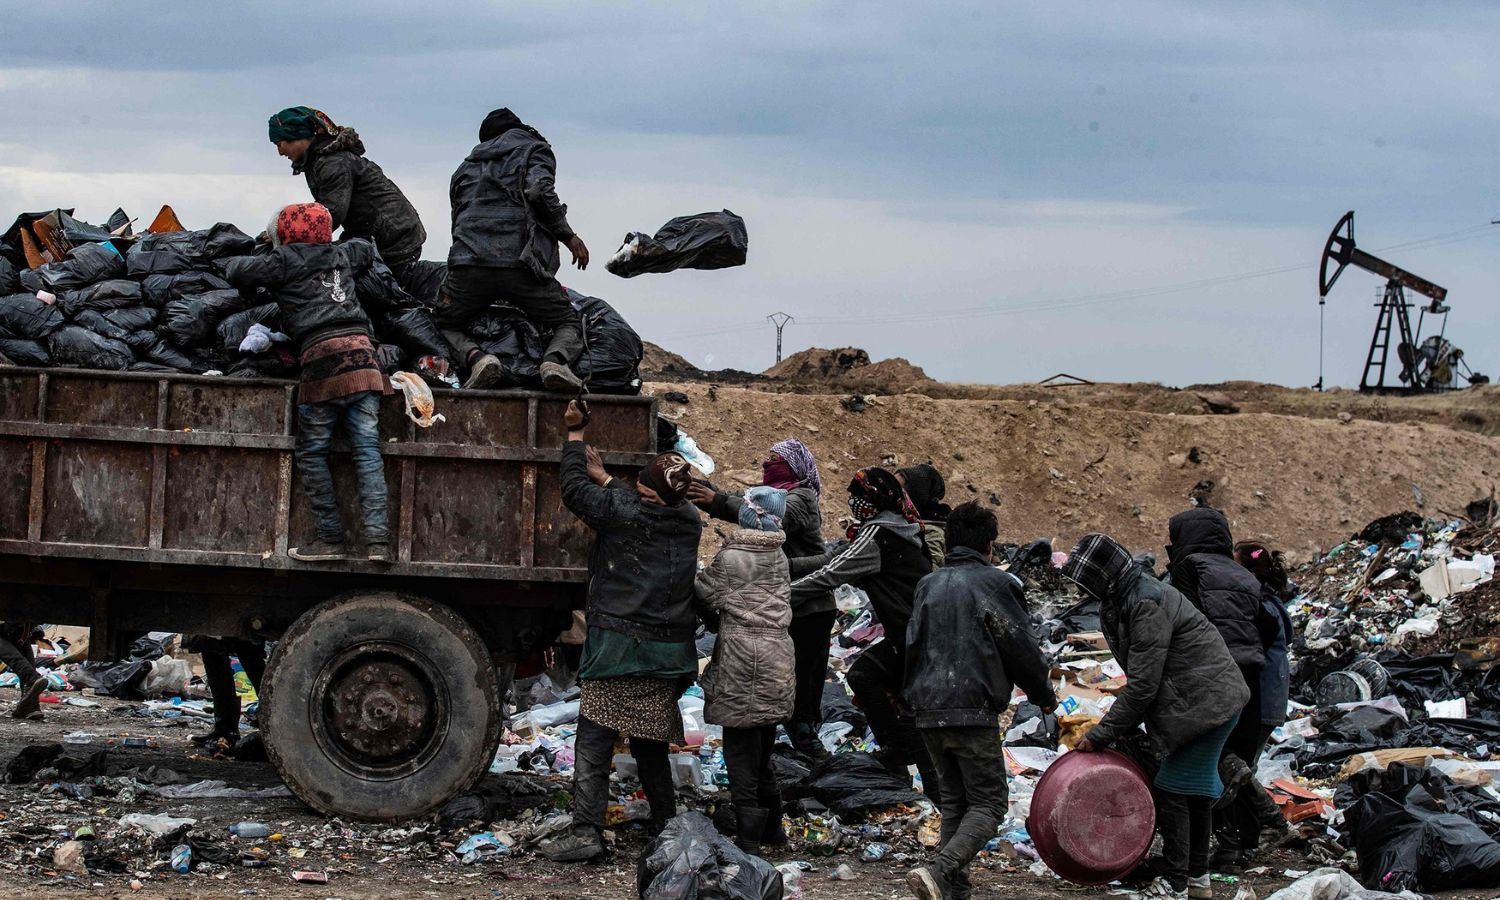 سوريون يبحثون في مكب للنفايات بالقرب من بئر نفطي بالقرب من مدينة المالكية شمال شرقي سوريا- 20 من كانون الثاني 2021 (فرانس برس)